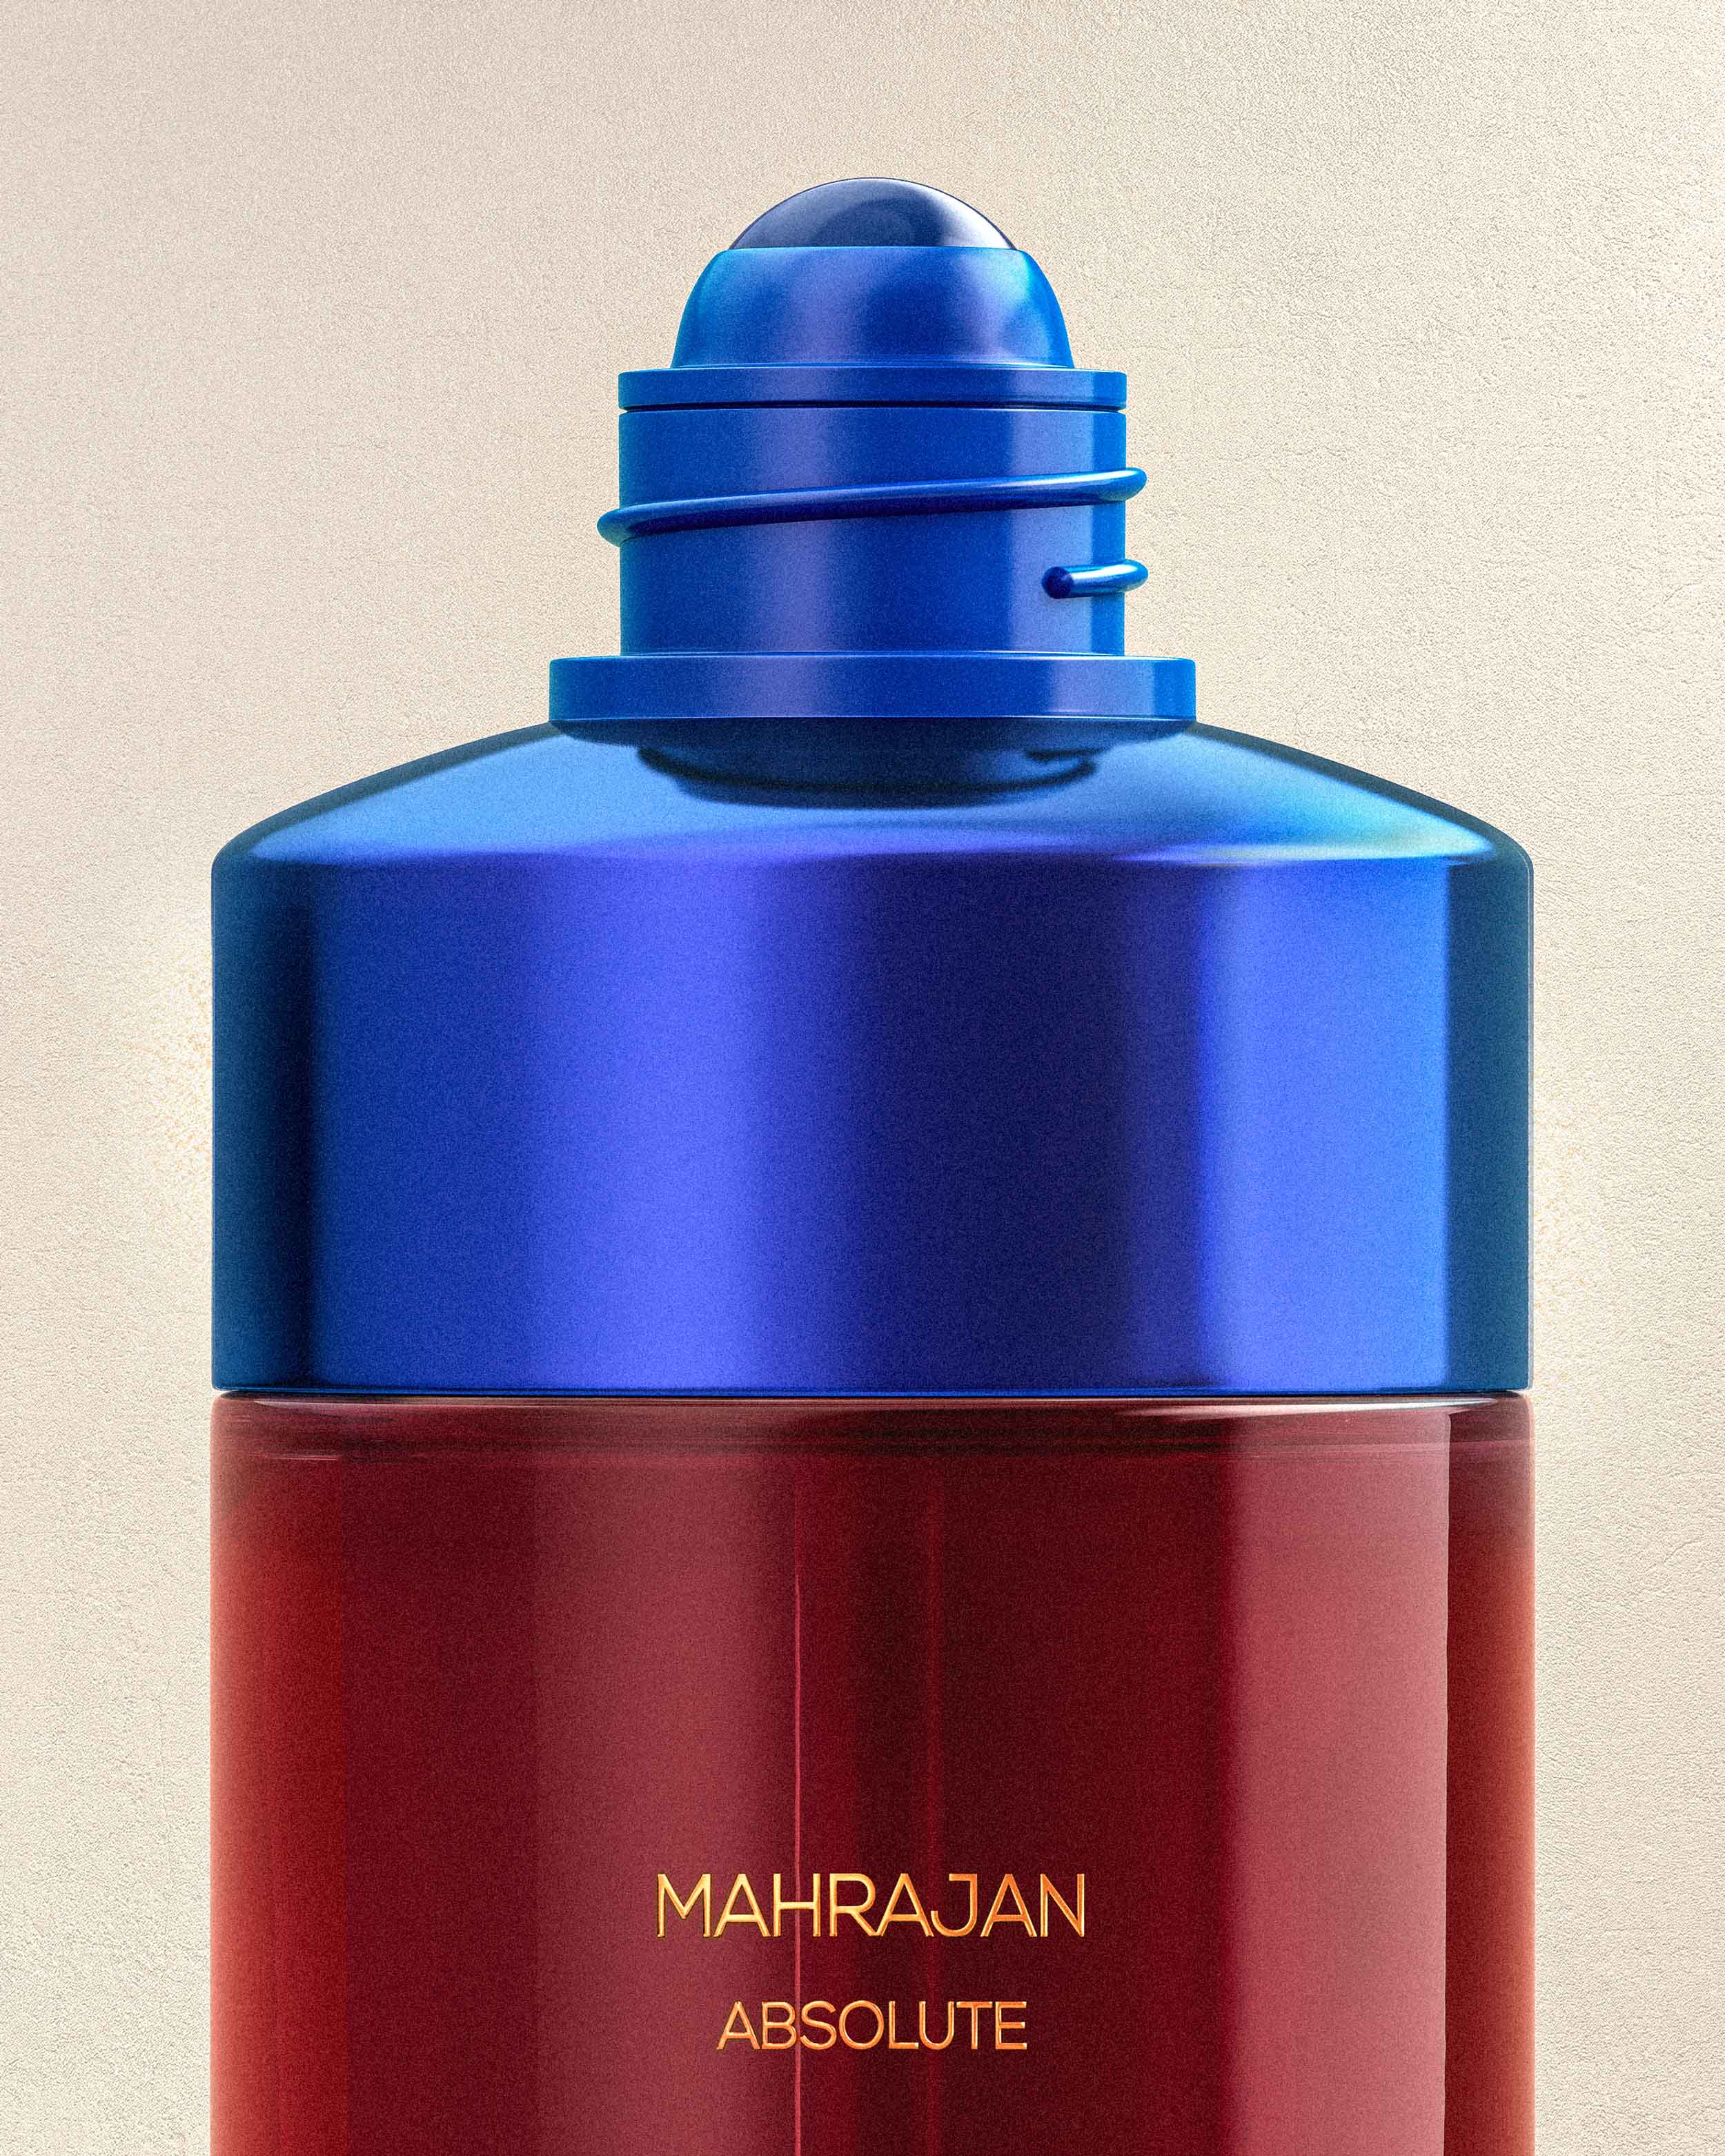 OJAR Absolute Mahrajan Perfume Roll-on